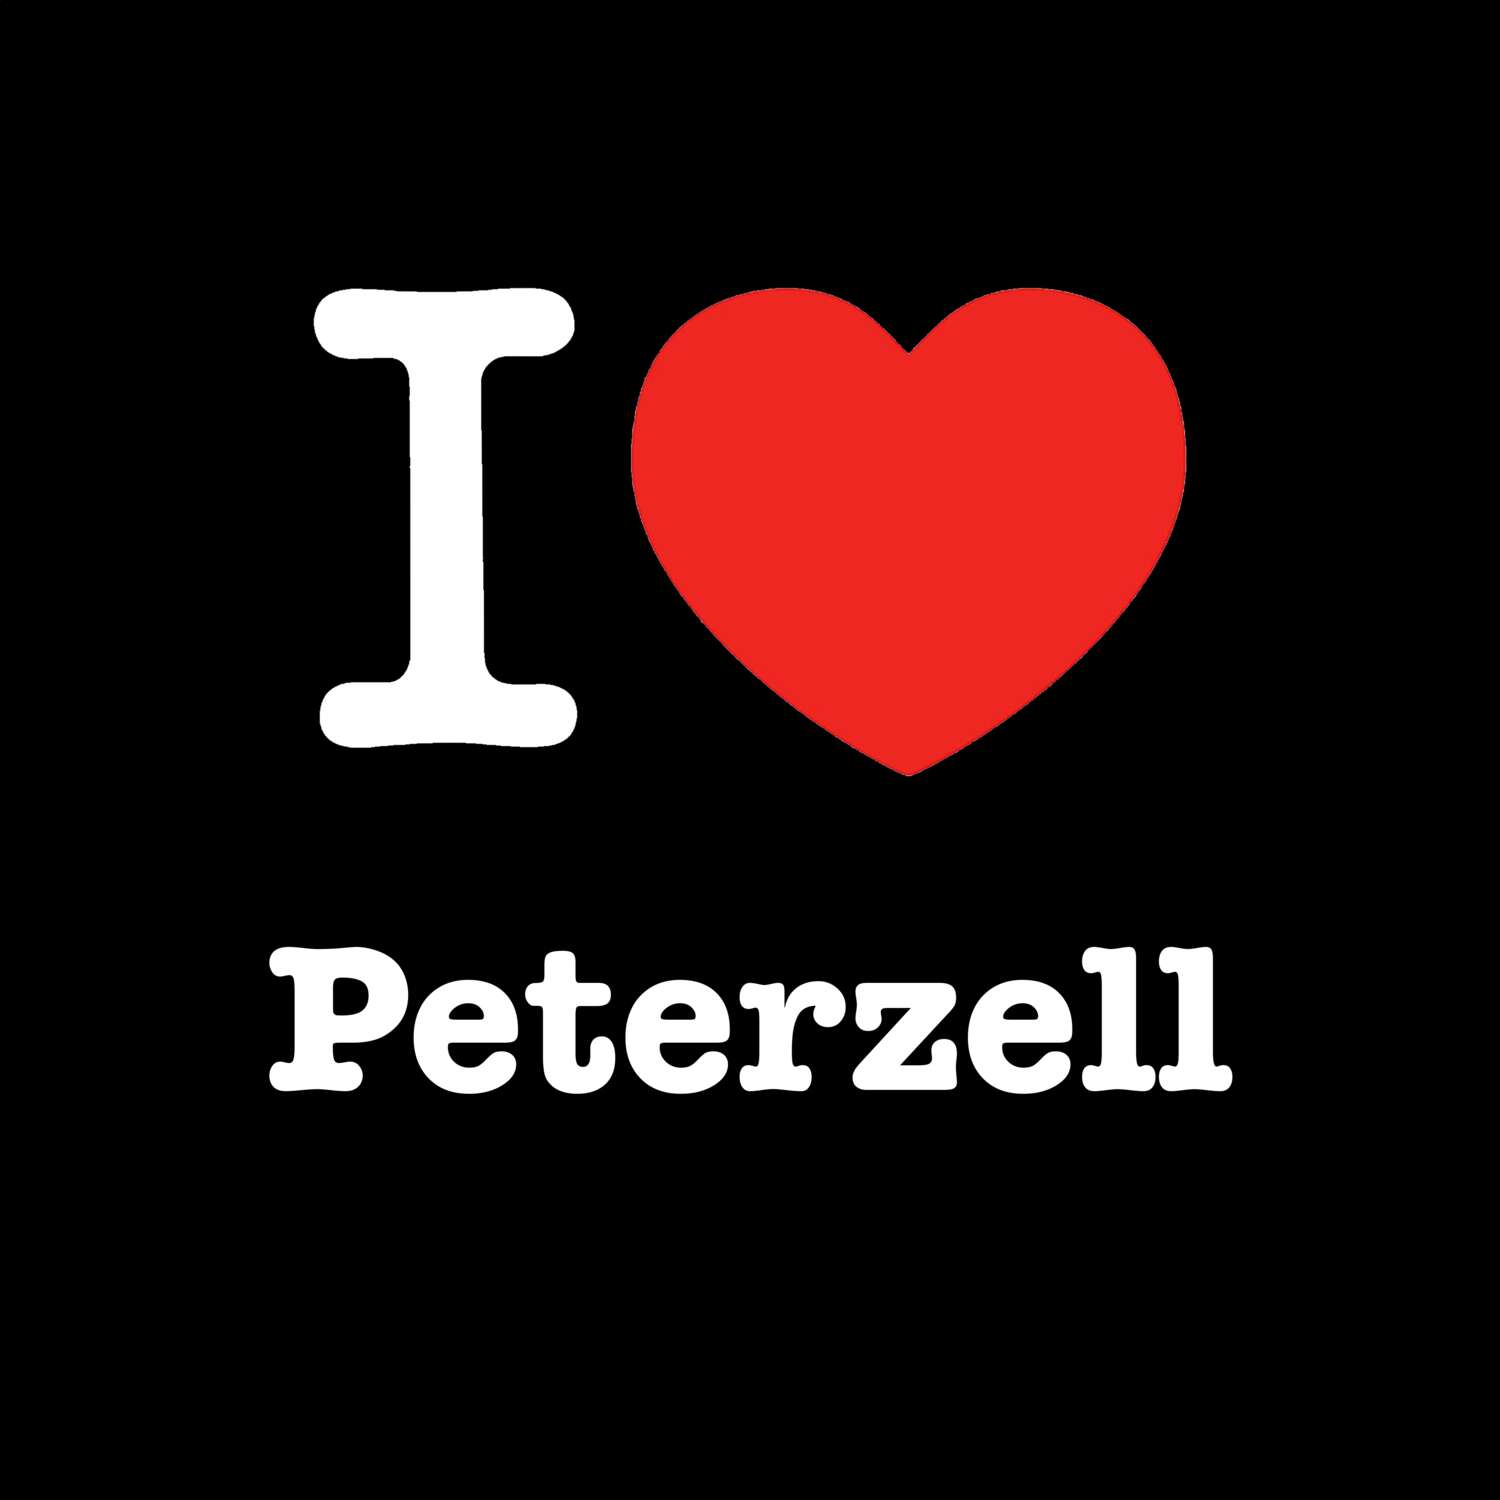 Peterzell T-Shirt »I love«